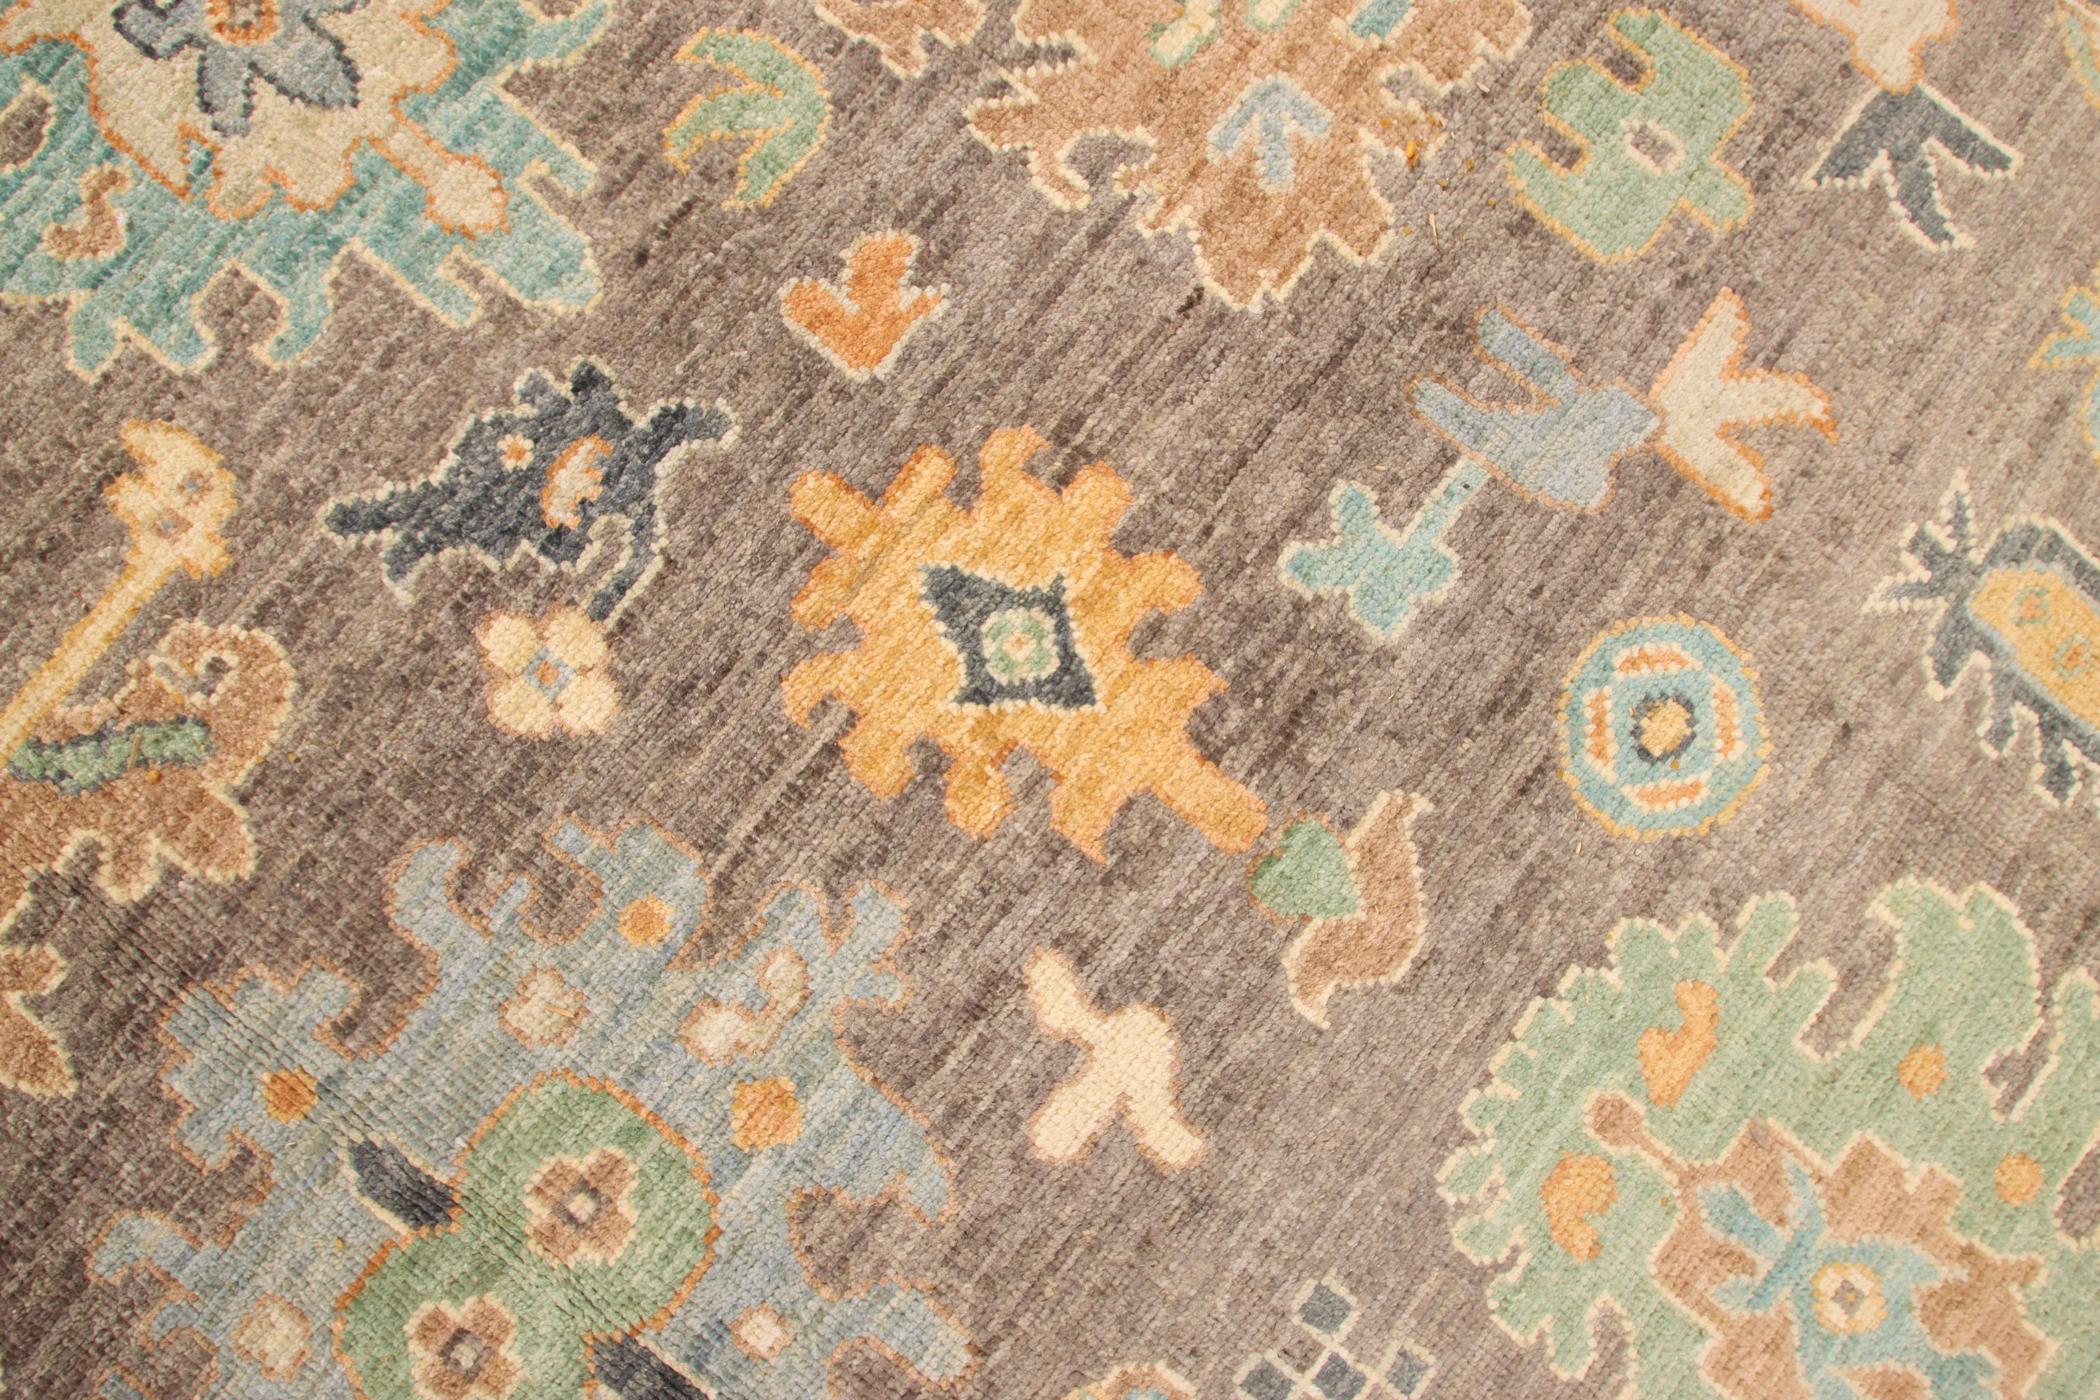 Schöner handgefertigter Teppich von turkmenischen Knüpfern in Afghanistan mit natürlichen Farbstoffen und handgesponnener Wolle.
Teppich im Ushak-Stil.